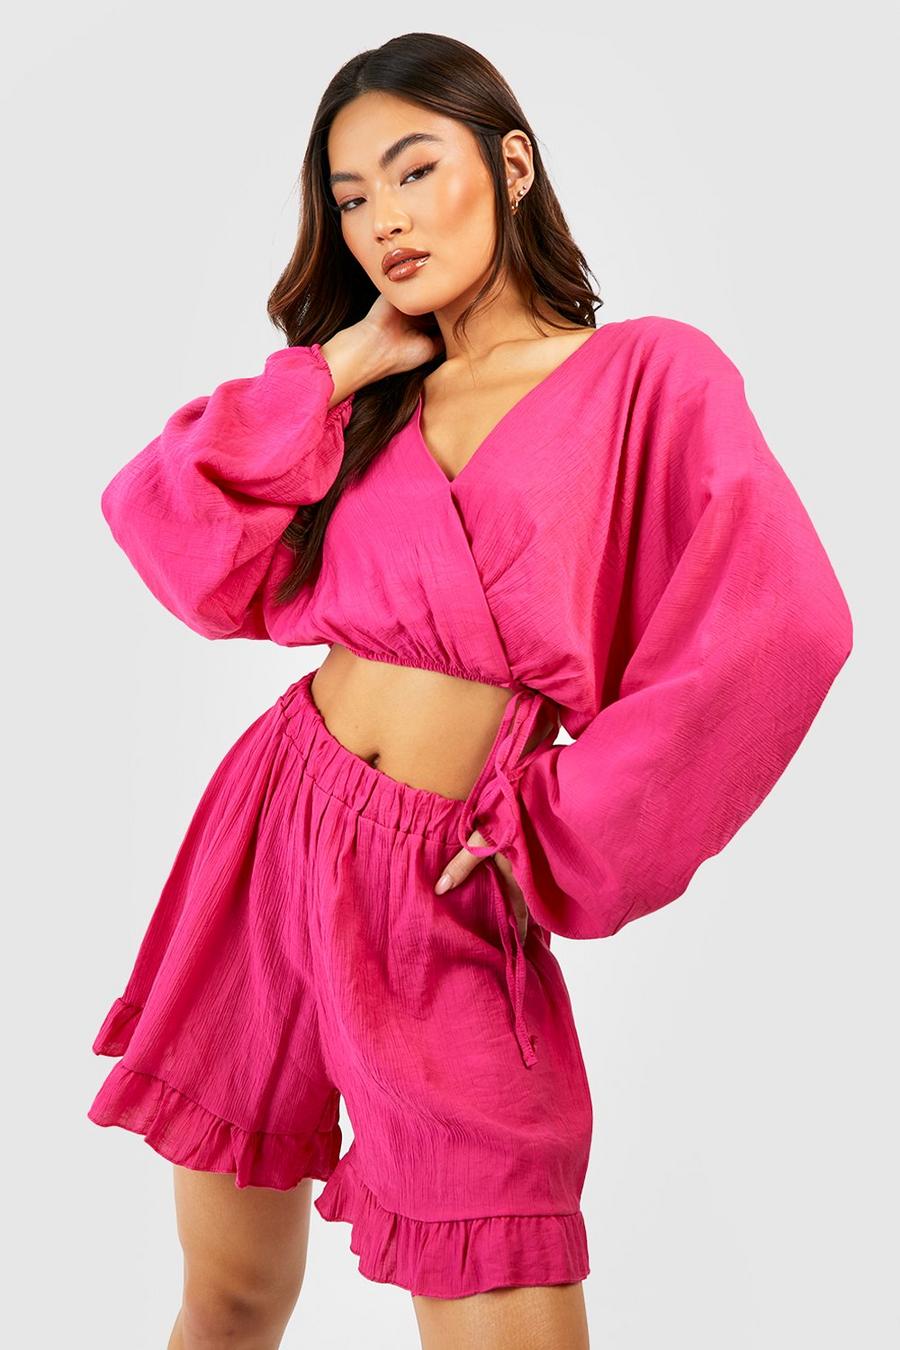 Ensemble texturé avec blouse et short à volants, Hot pink